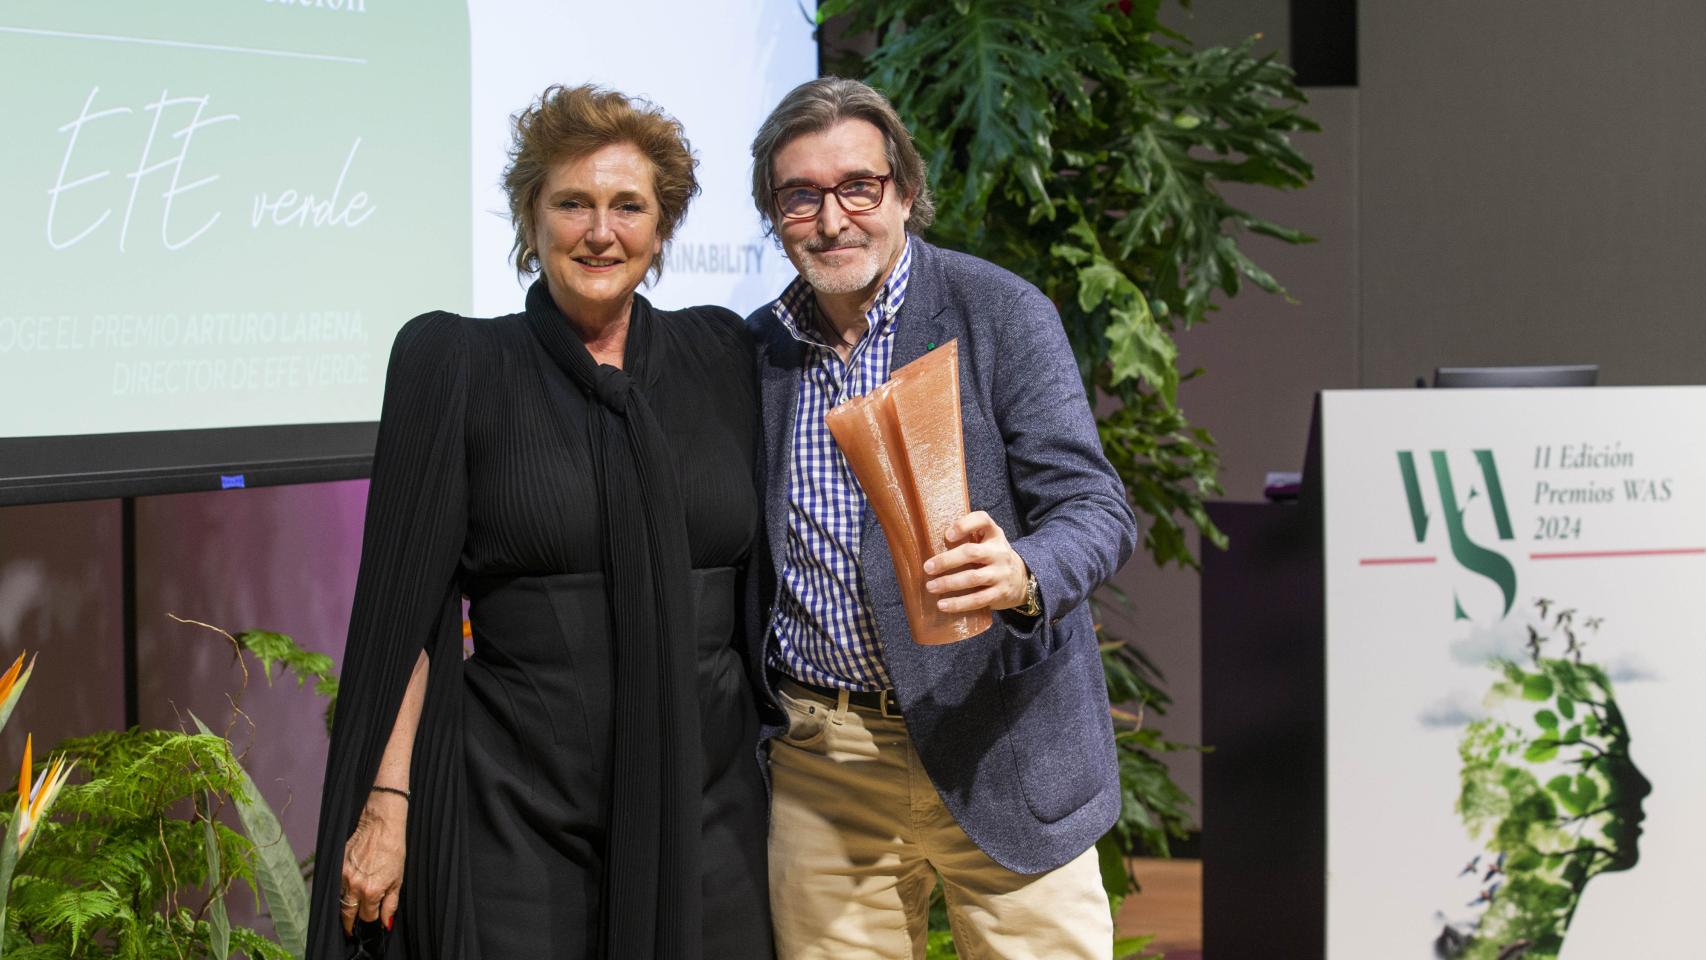 Arturo Larena, director de EFE Verde, junto a Francesca Thyssen-Bornemisza, fundadora y presidenta de Thyssen-Bornemisza Art Contemporary (TBA21).